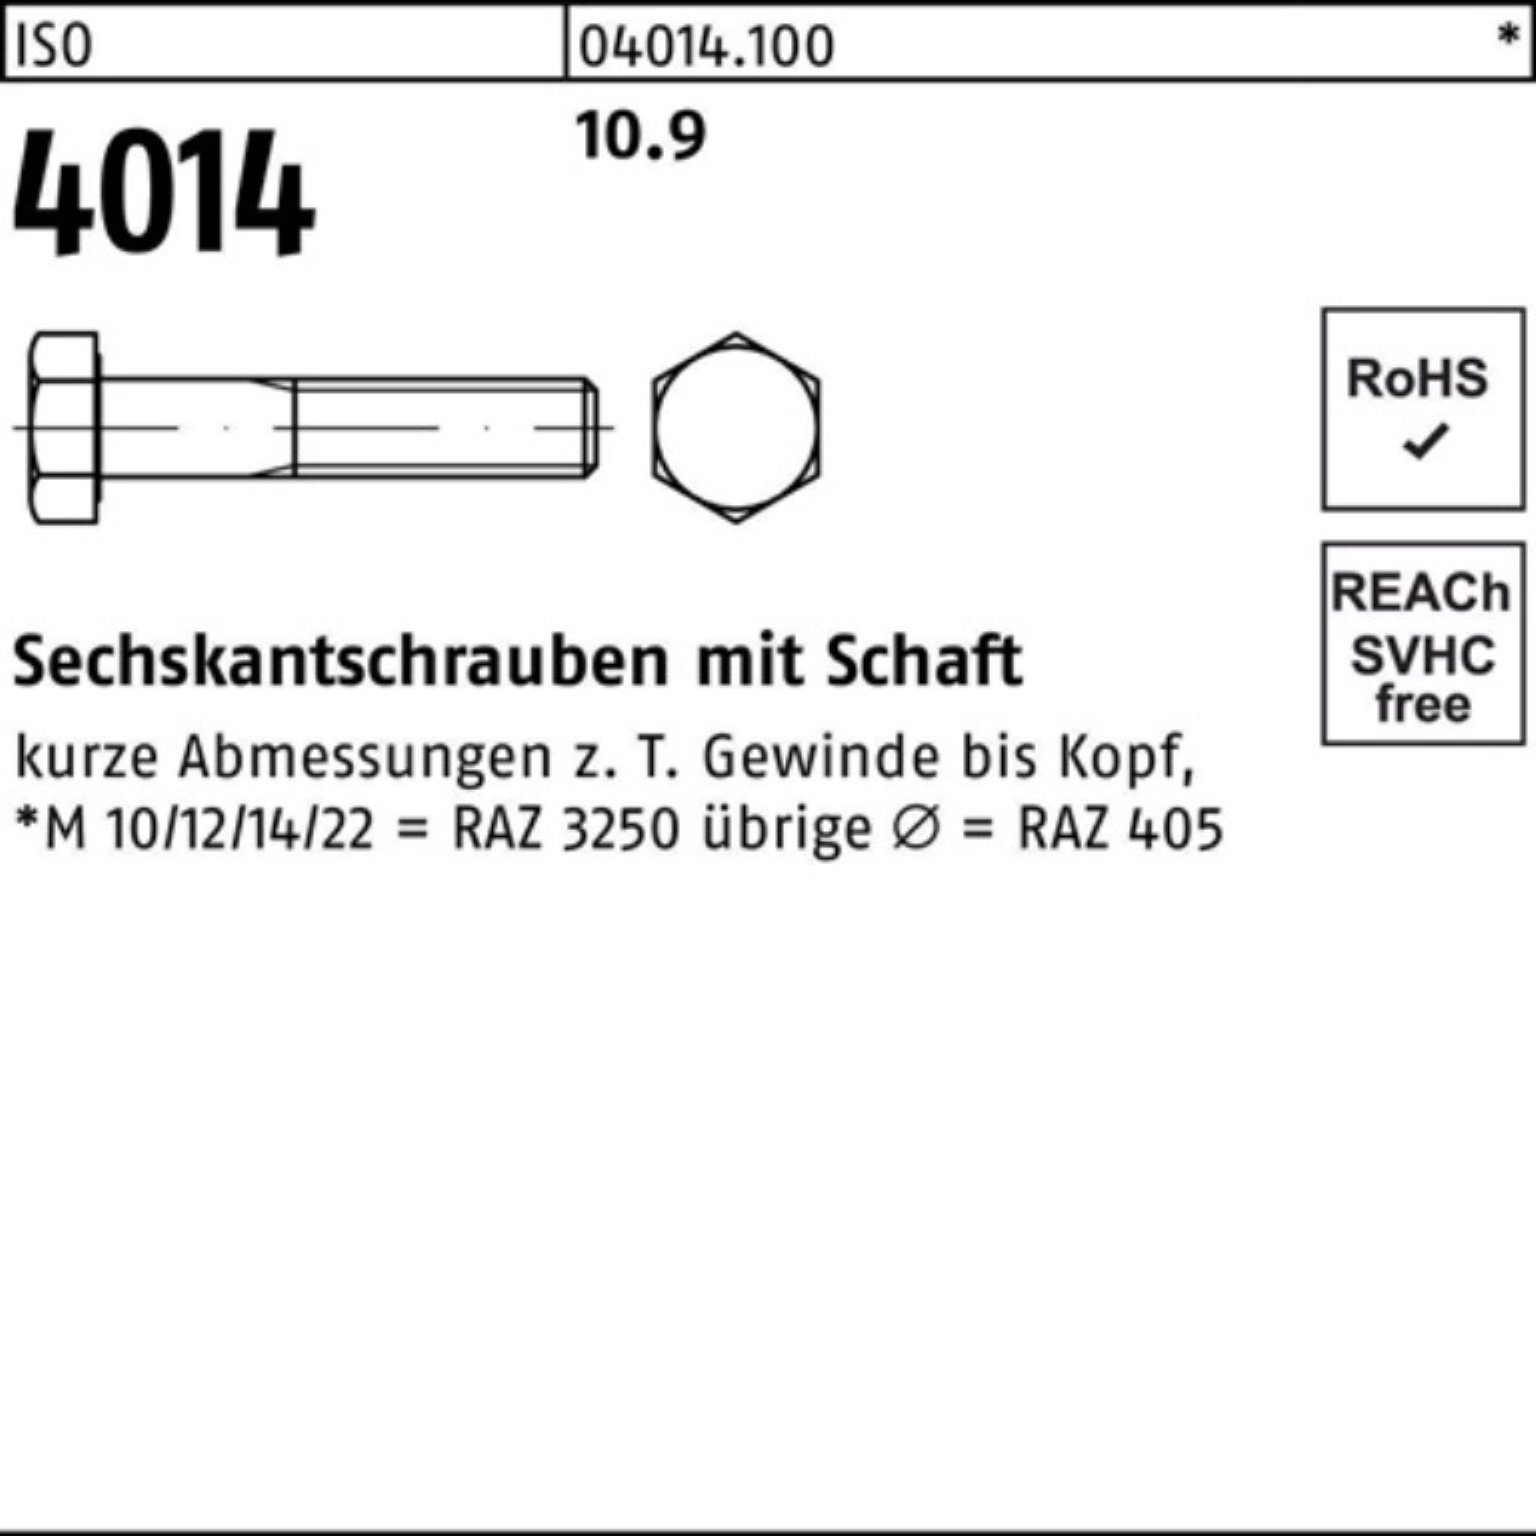 Pack 320 ISO Schaft 100er Sechskantschraube IS Bufab 4014 Sechskantschraube M33x 1 Stück 10.9